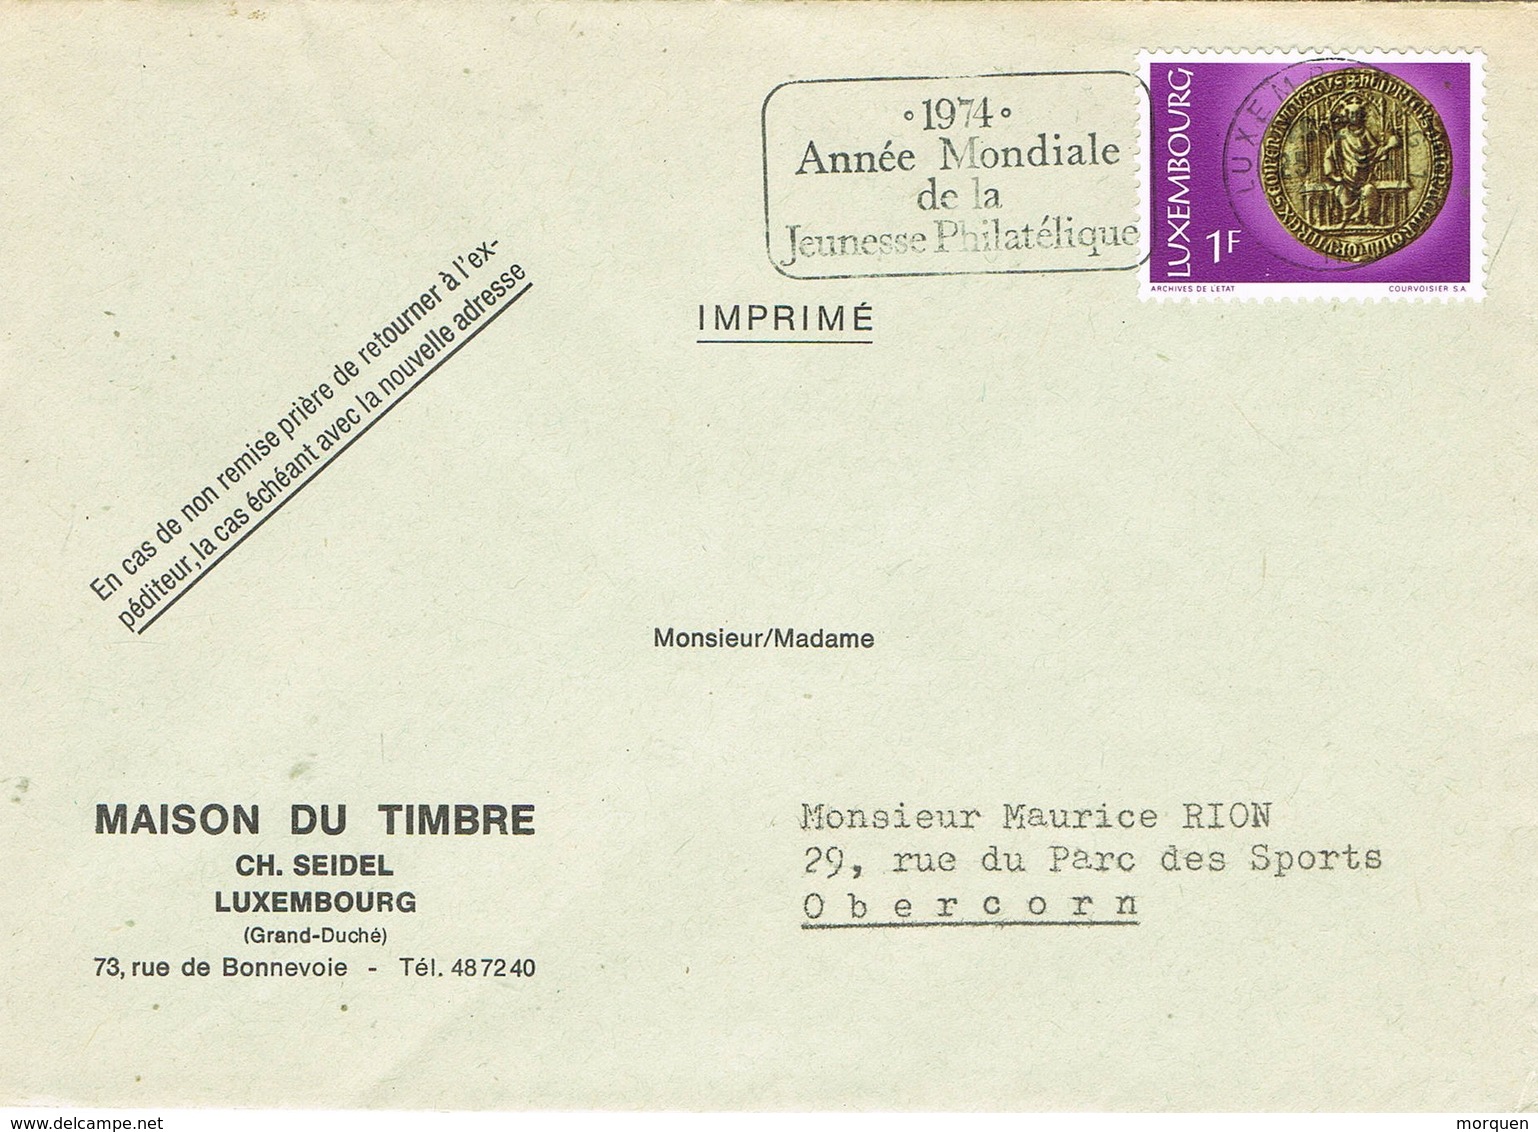 30675. Carta Imprimé LUXEMBOURG 1974. Slogan Année Mondiale Jeunesse Philatelique. Impresos - Covers & Documents